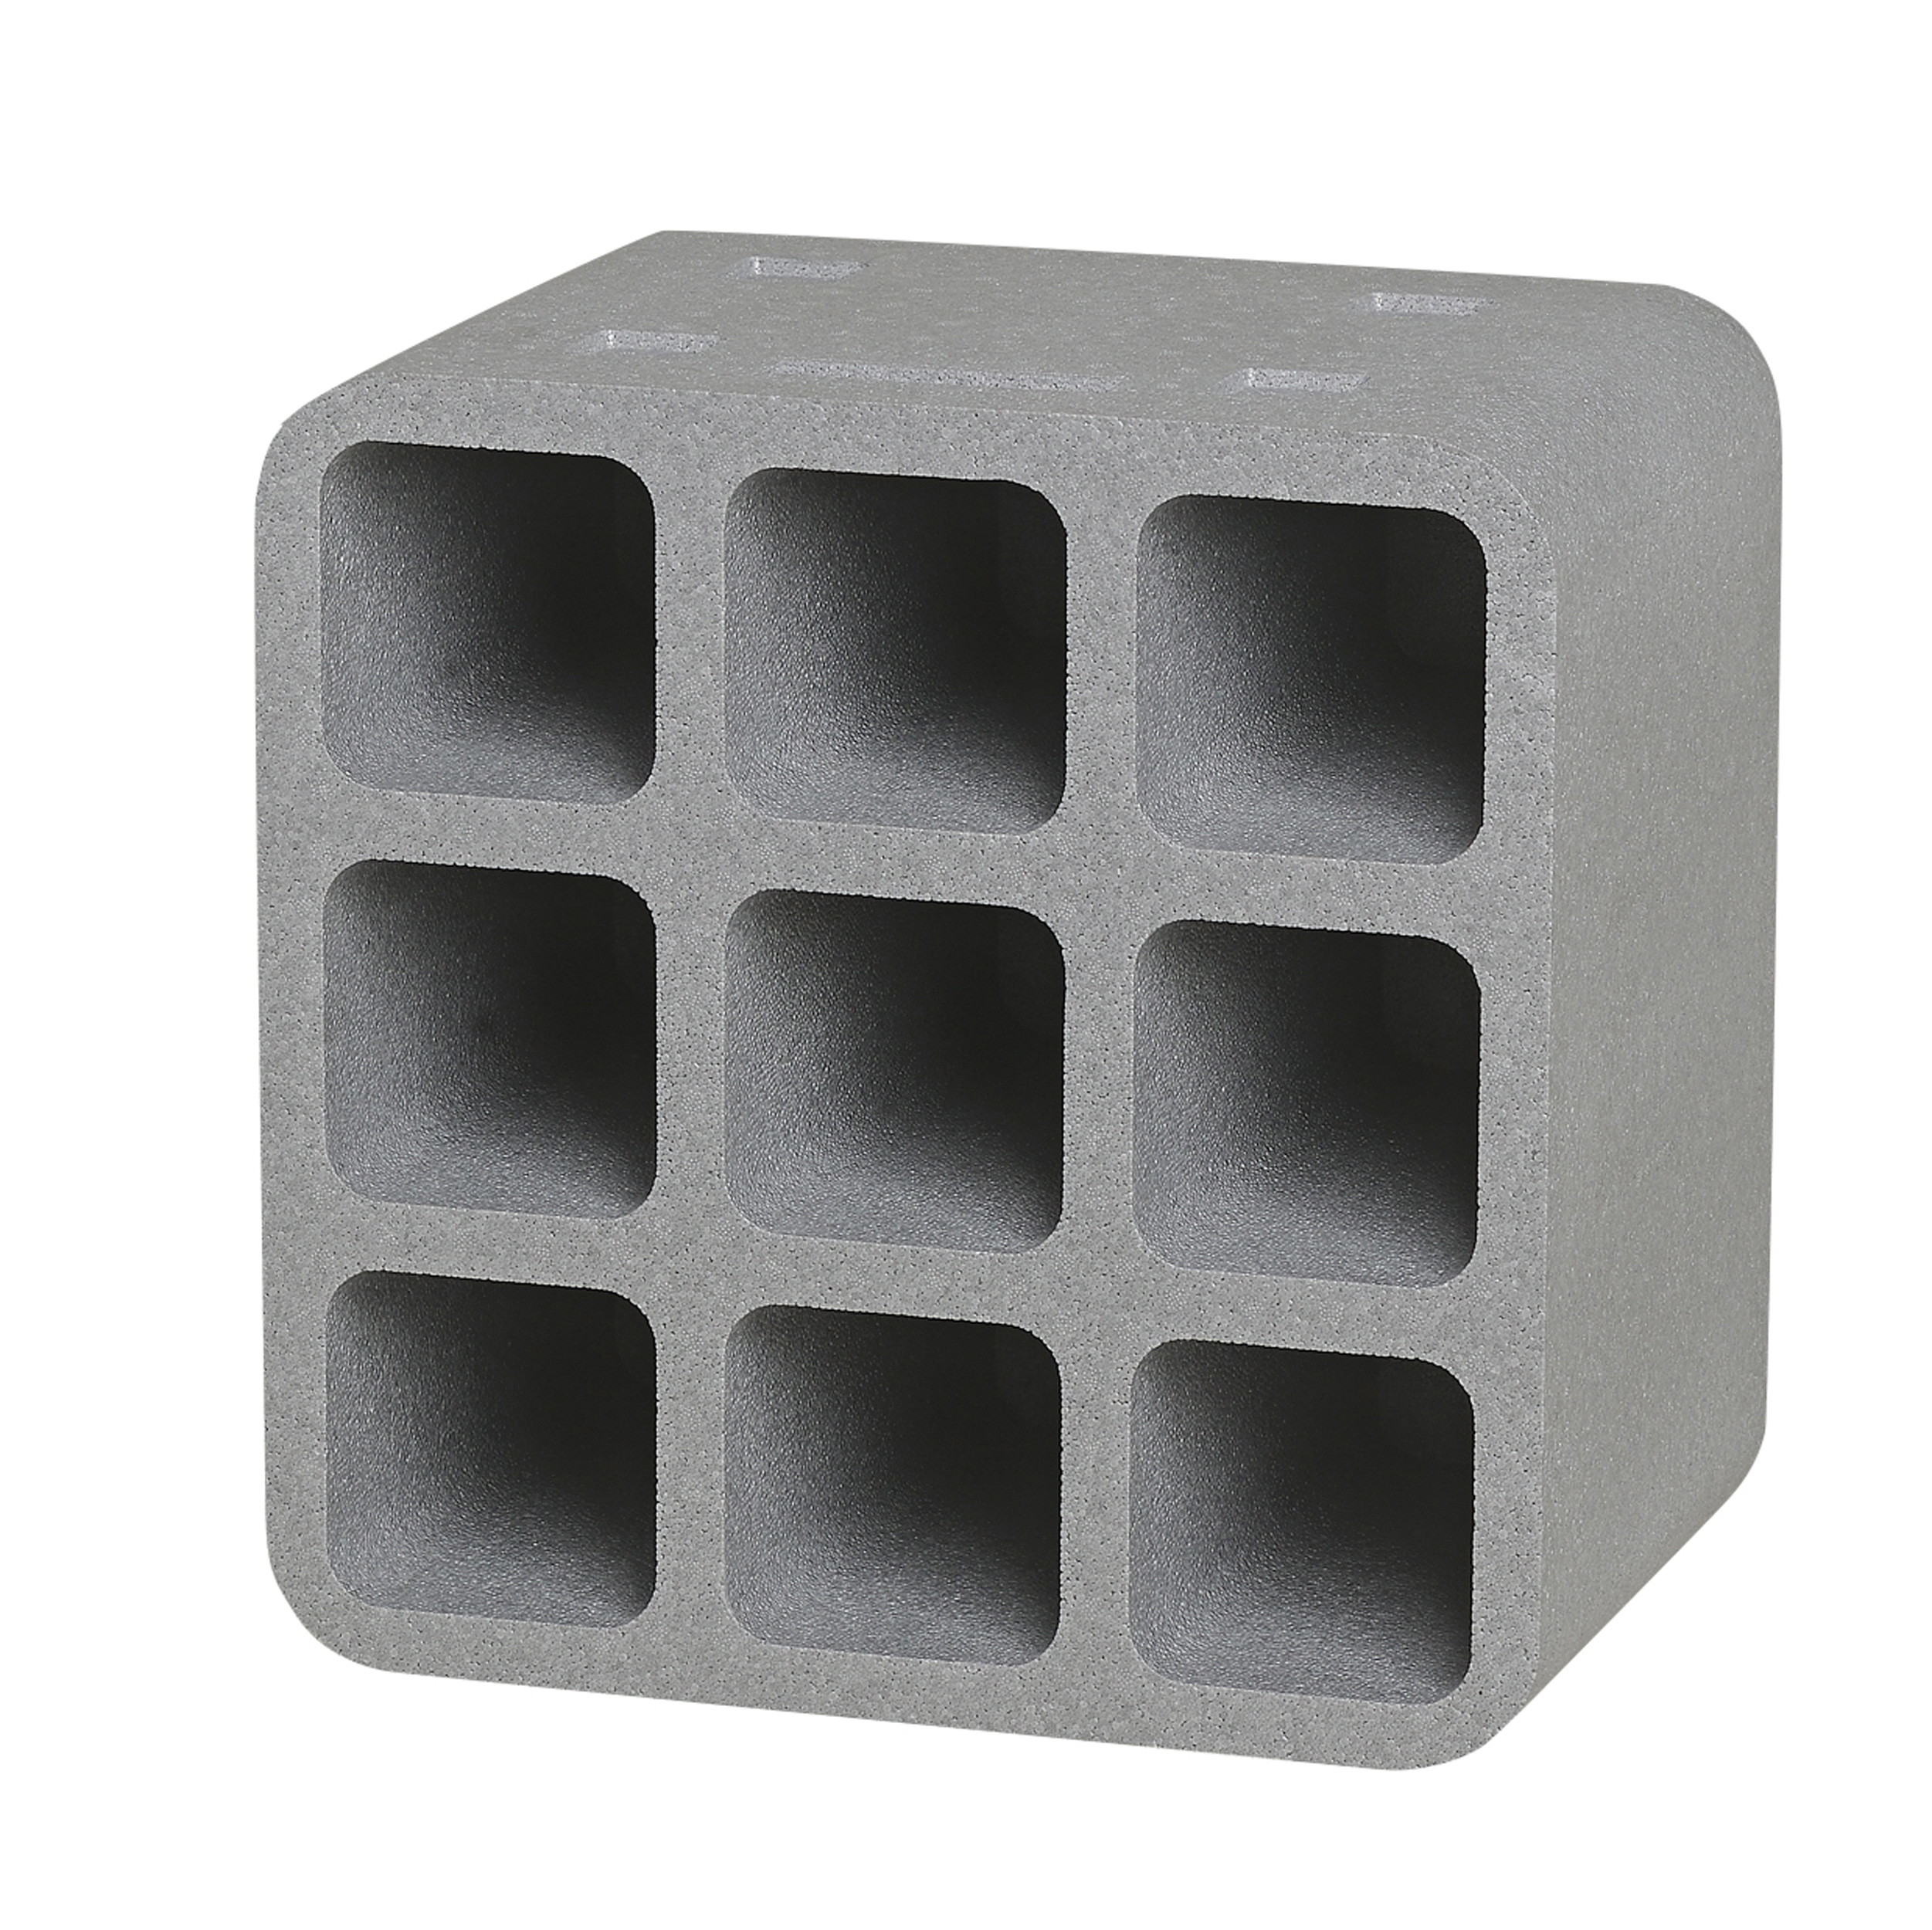 Climapor Flaschenbox Cube, grau, für 9 Flaschen max. Ø 9 cm - 4 Stück